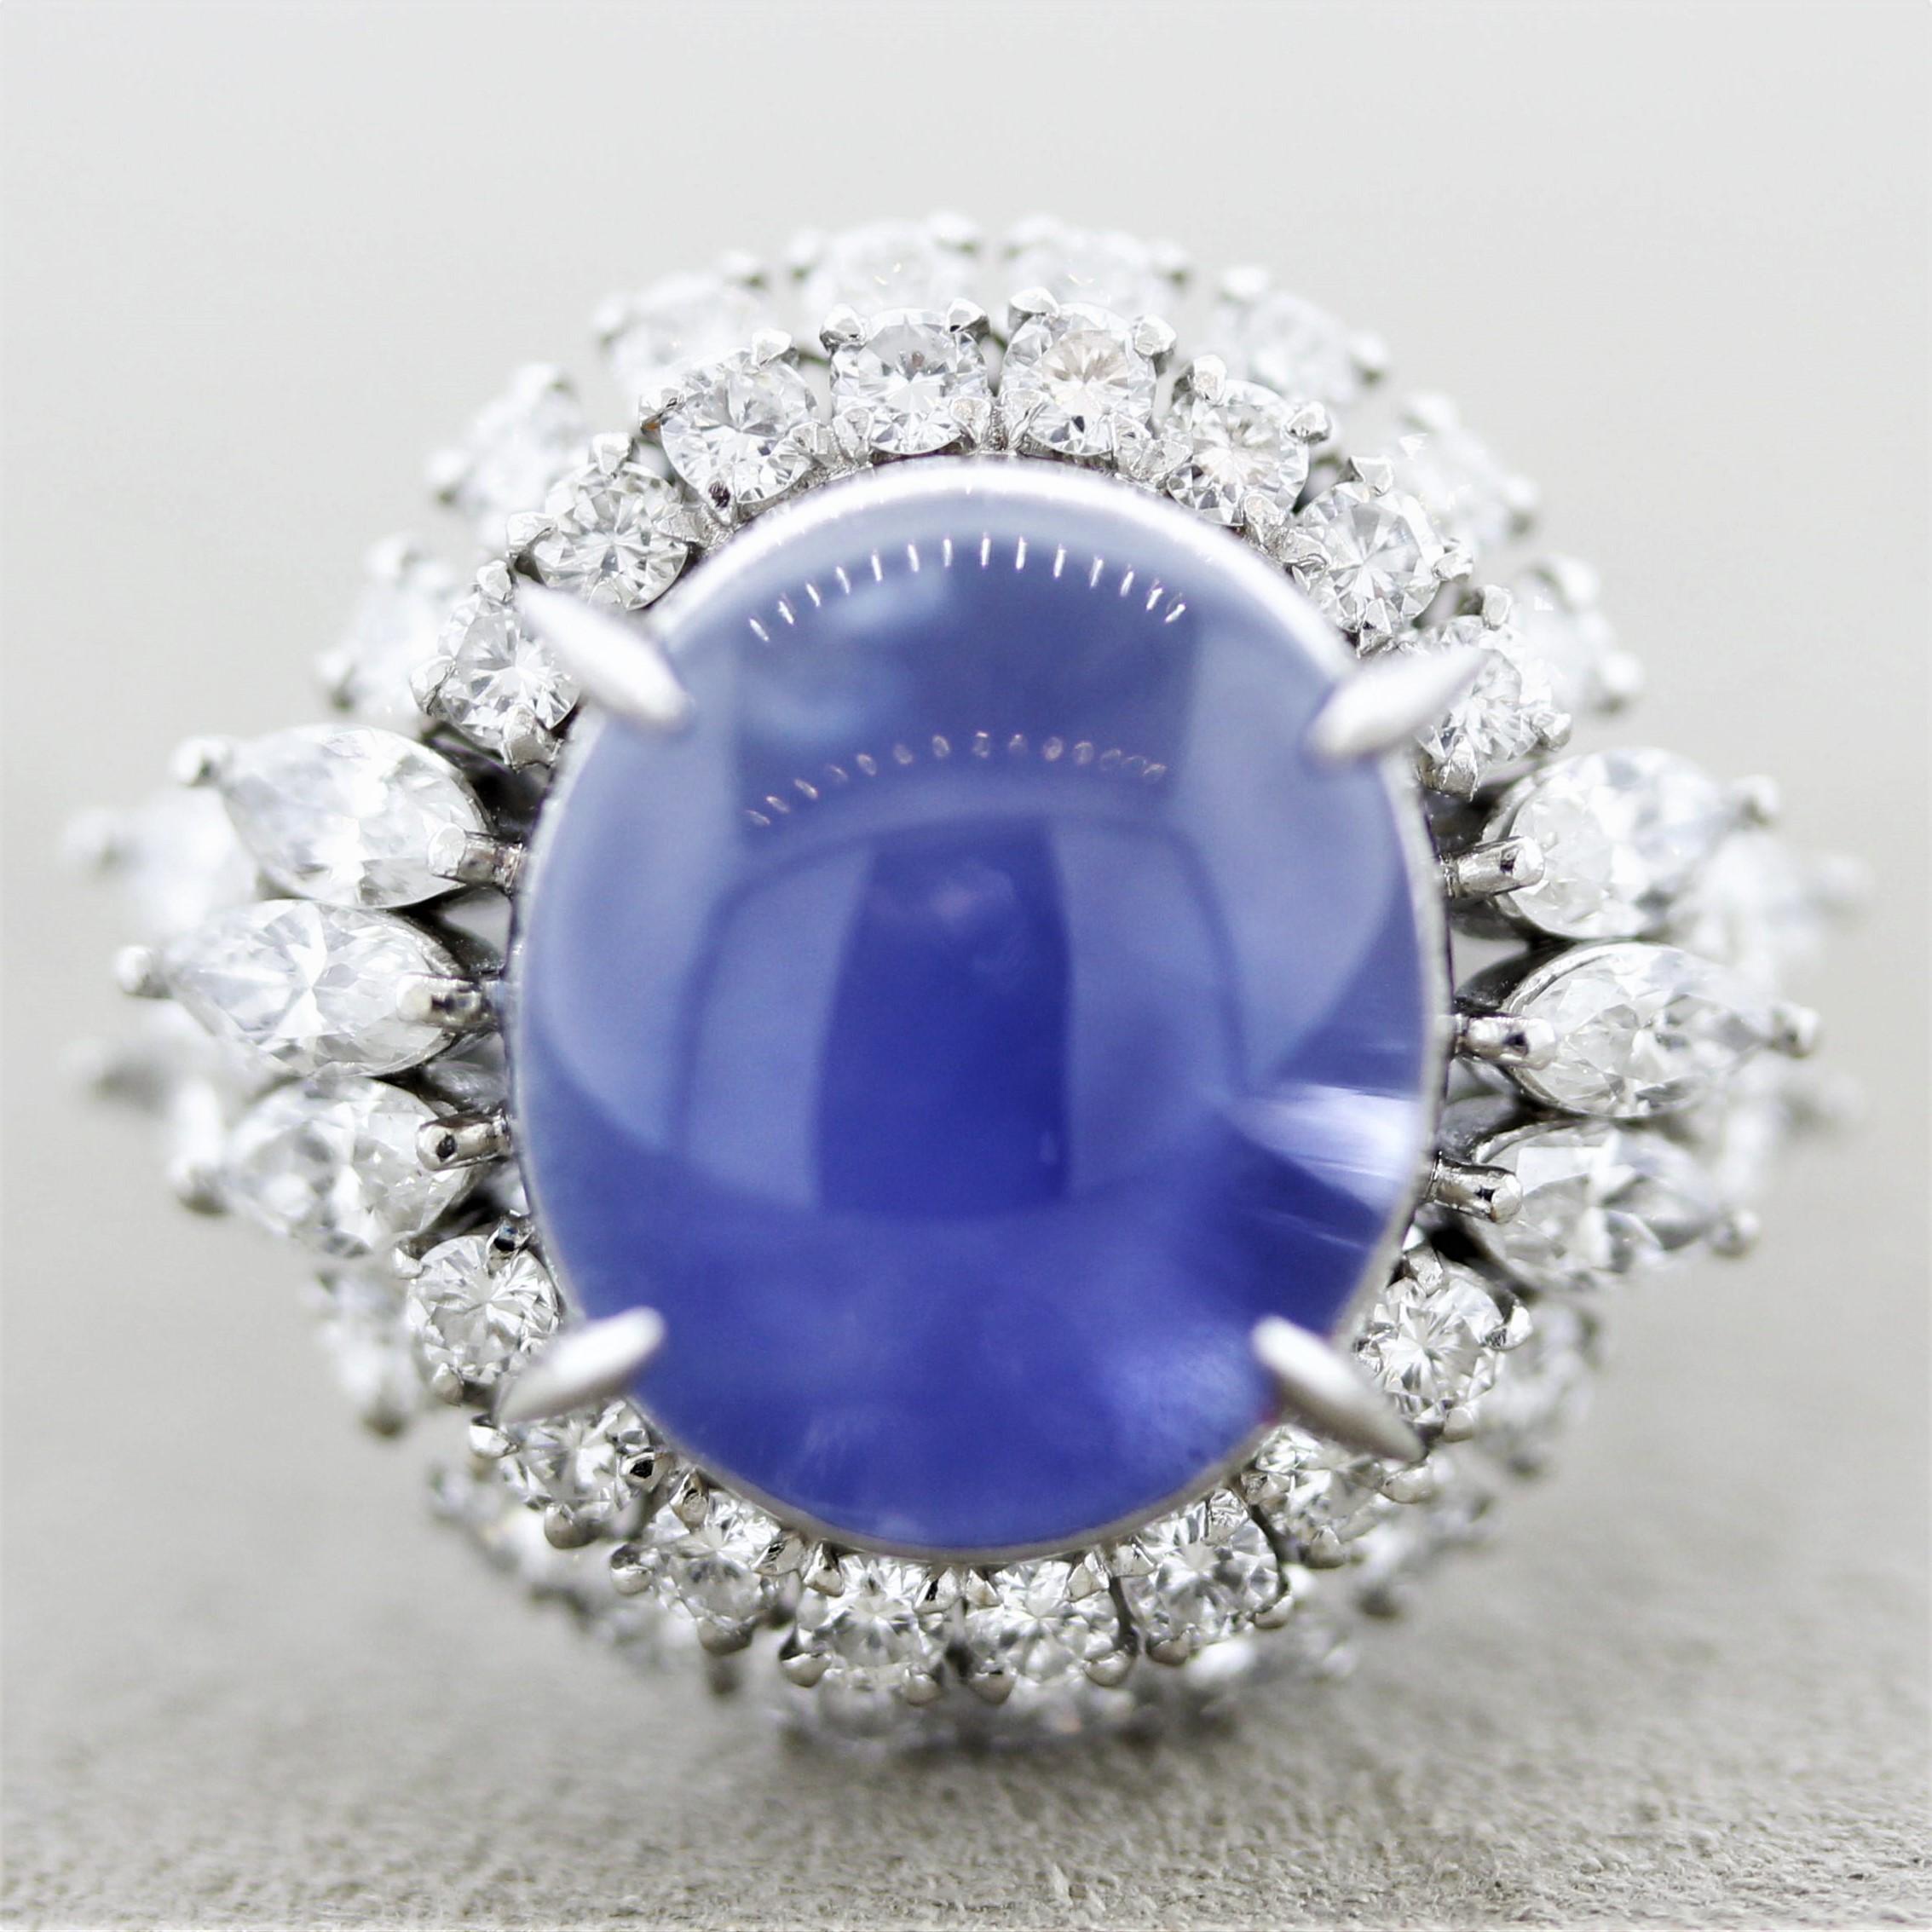 Ein feiner und eleganter Ring mit einem Sternsaphir, der von einer Reihe großer, strahlend weißer Diamanten geblendet wird. Der Saphir wiegt 10,57 Karat und hat eine satte, lebhafte blaue Farbe sowie einen starken 6-strahligen Stern. Der Saphir ist